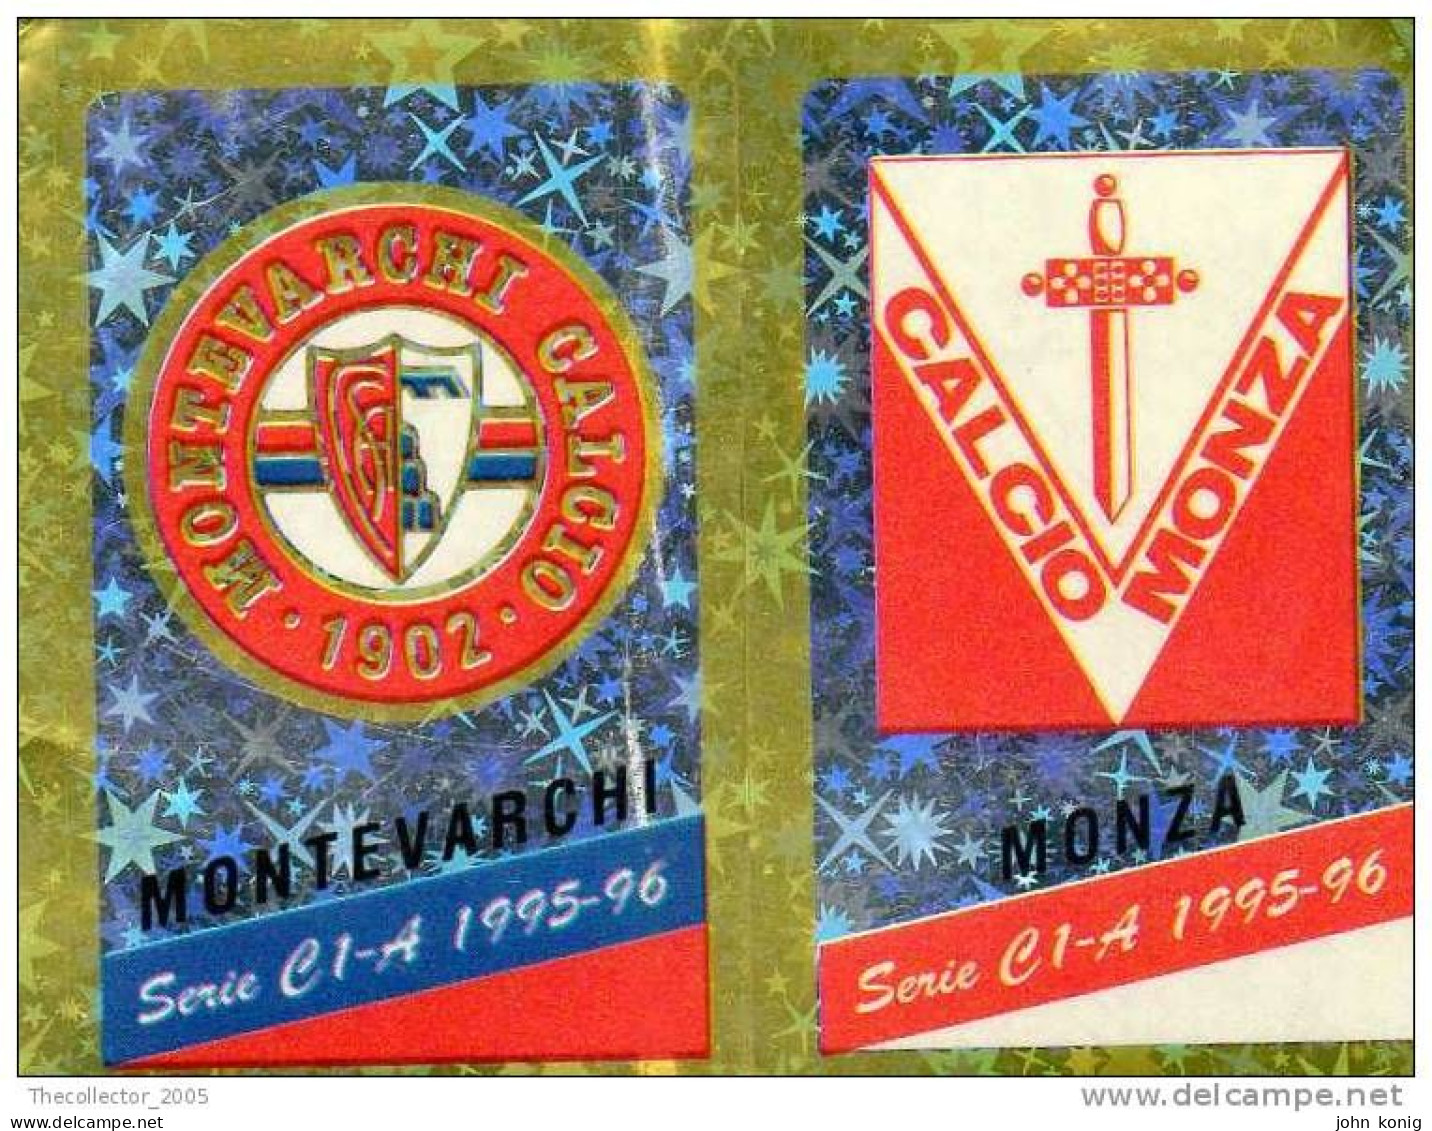 CALCIATORI - CALCIO Figurine Panini-calciatori 1995-96-n.539ab-scudetto Montevarchi-Monza (prismatico) - NUOVA-MAI INCOL - Italienische Ausgabe